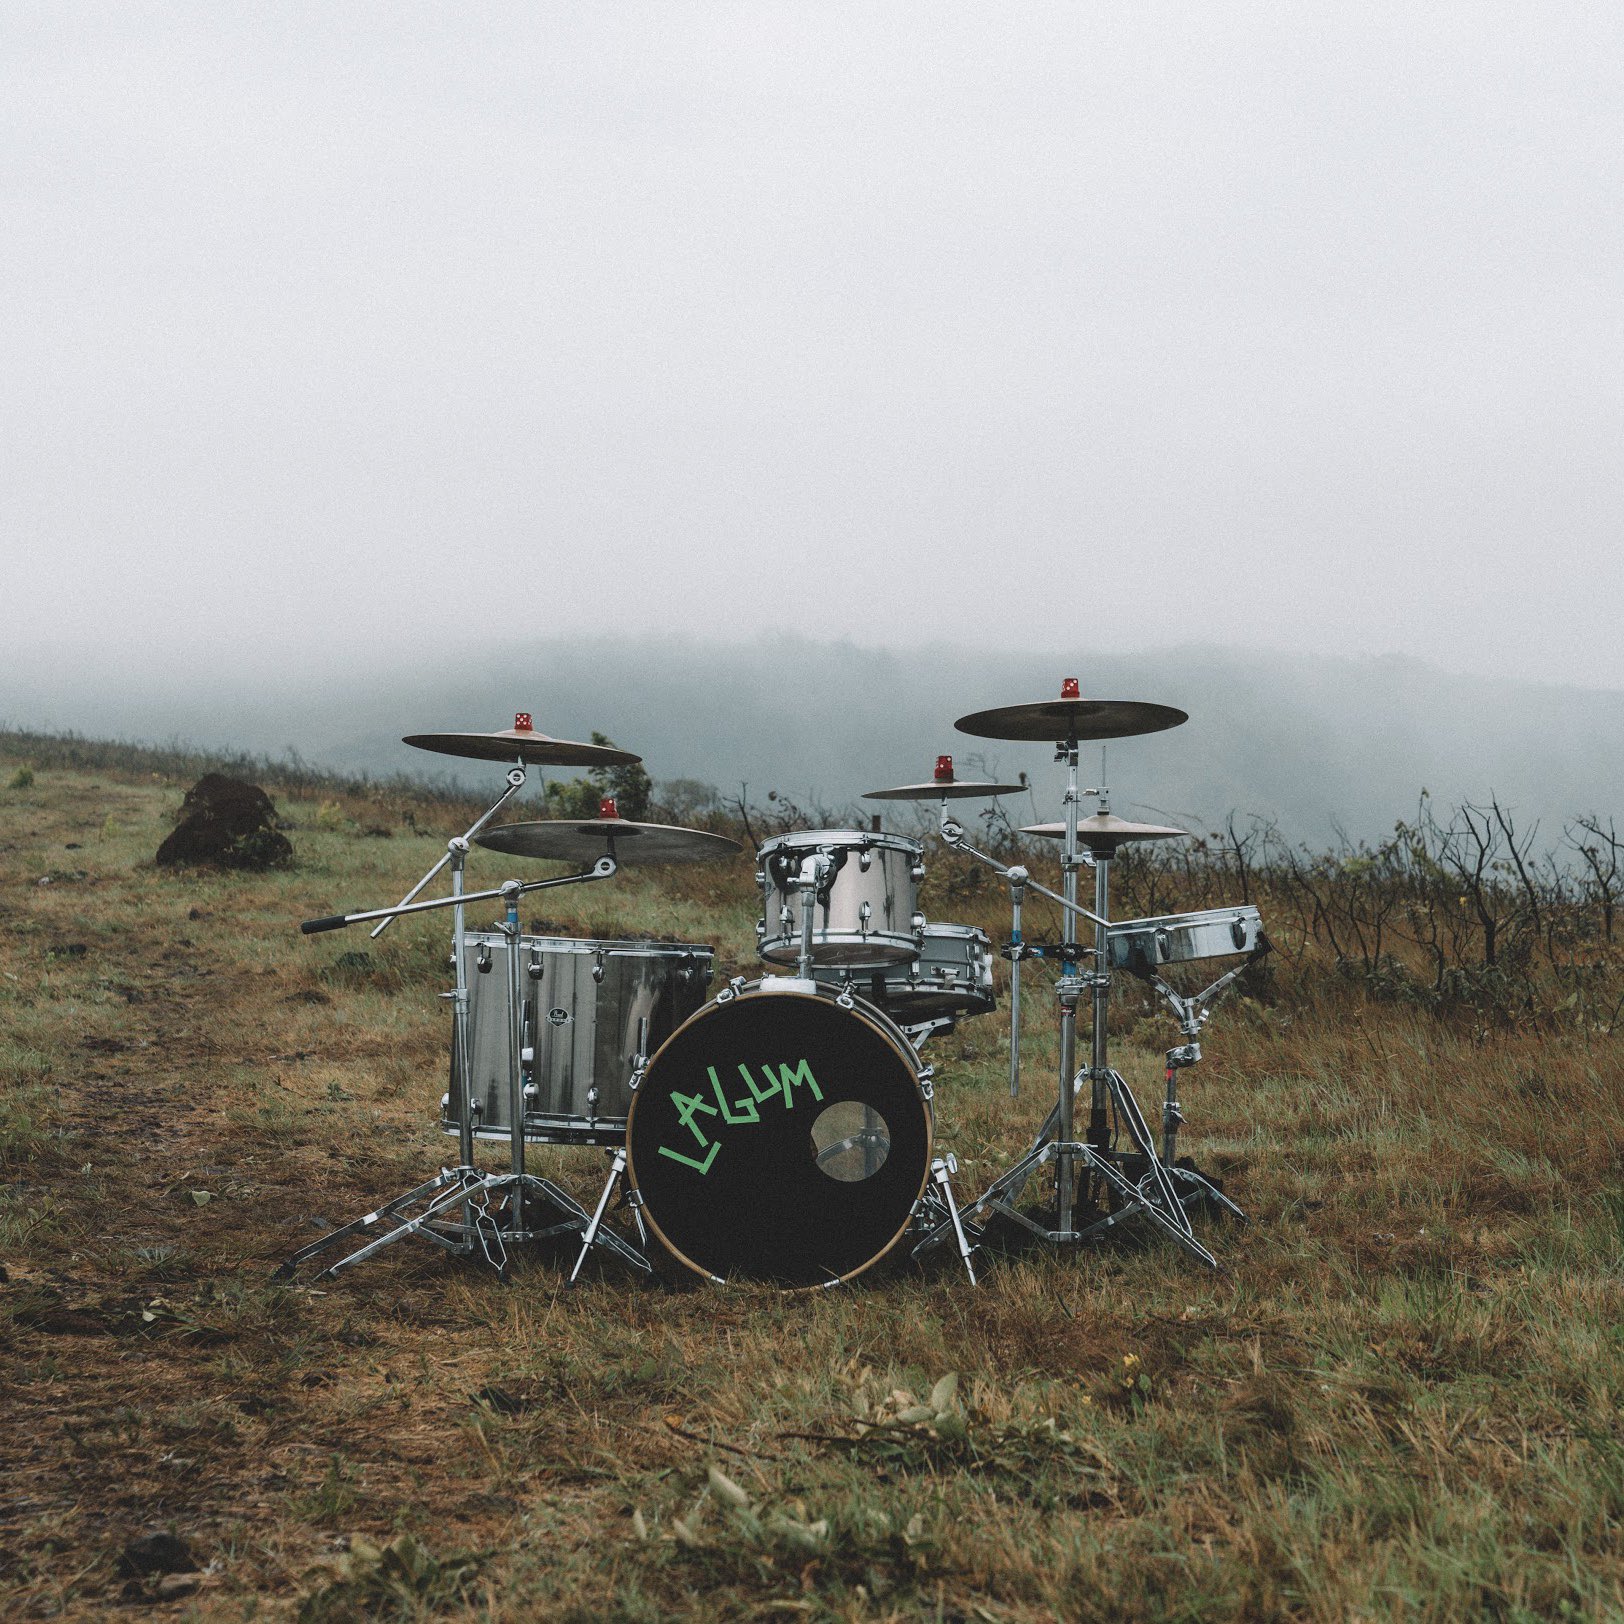 Texto alternativo: Fotografia da bateria da Lagum num cenário de campo. Existe uma vegetação rasteira com neblina ao fundo. Na frente, existe uma bateria prata com o tambor preto escrito Lagum com letra verde.